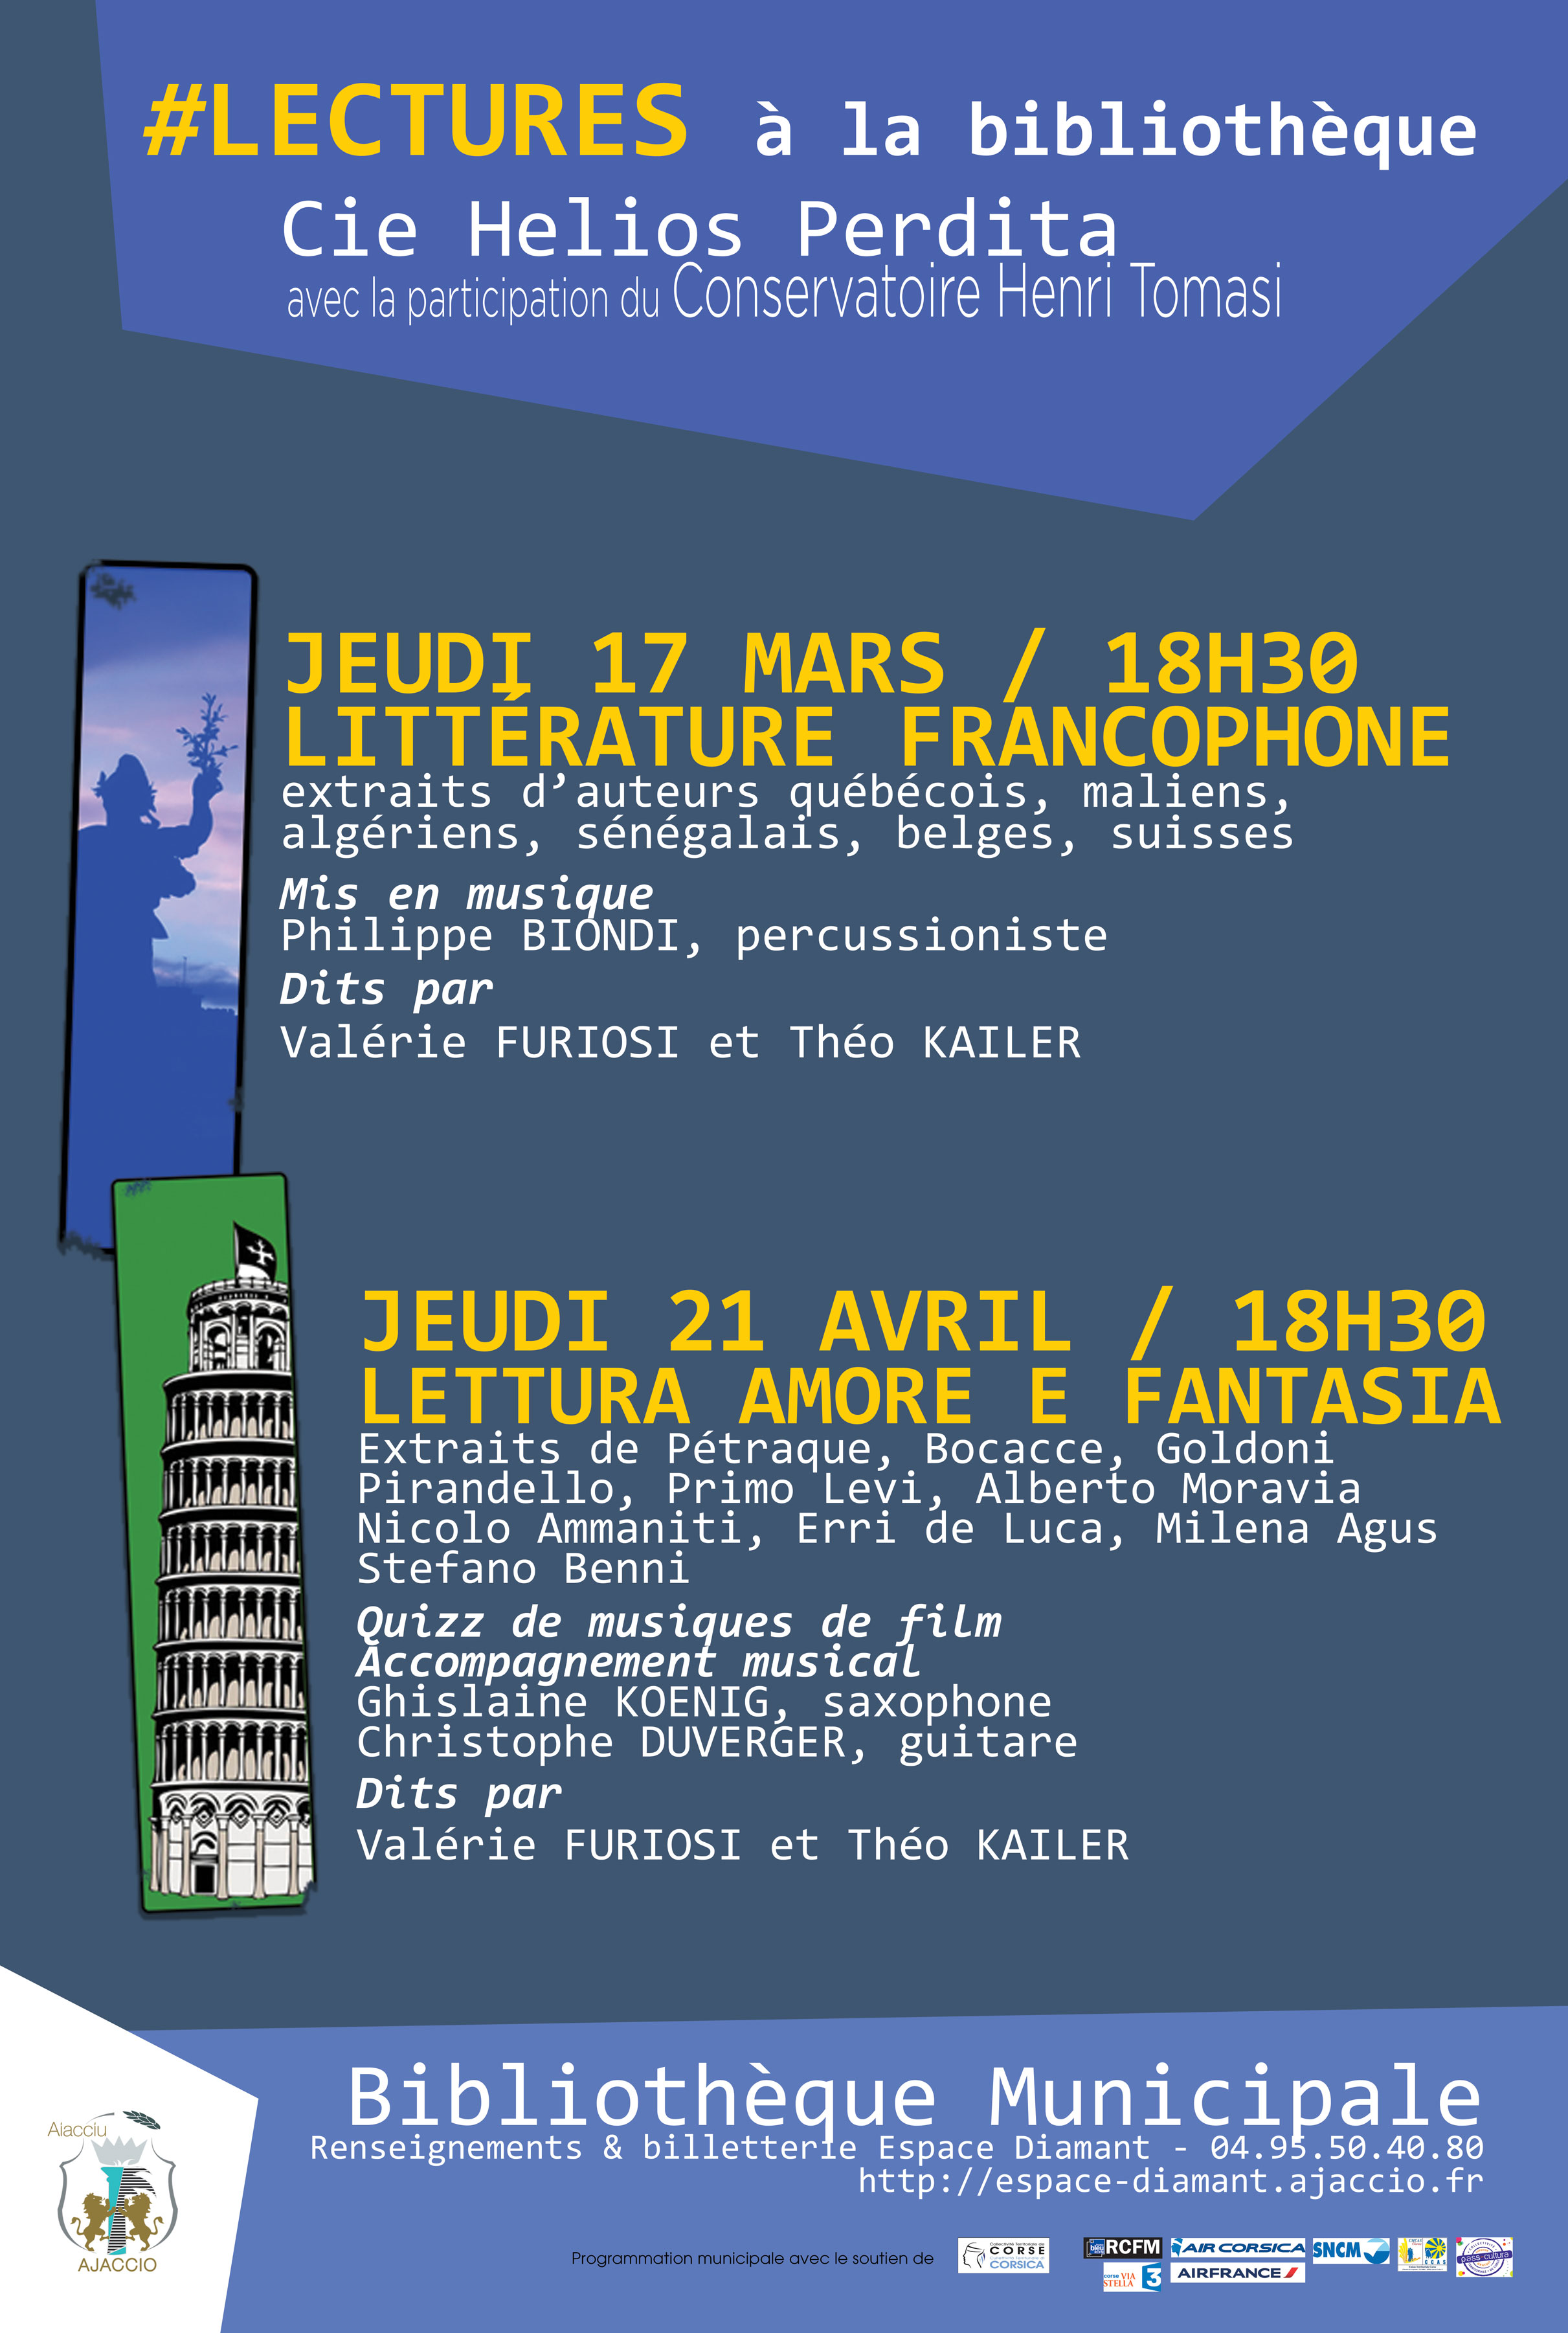 Jeudi 17 mars, 18h30 Lecture à la Bibliothèque Fesch : La littérature francophone 